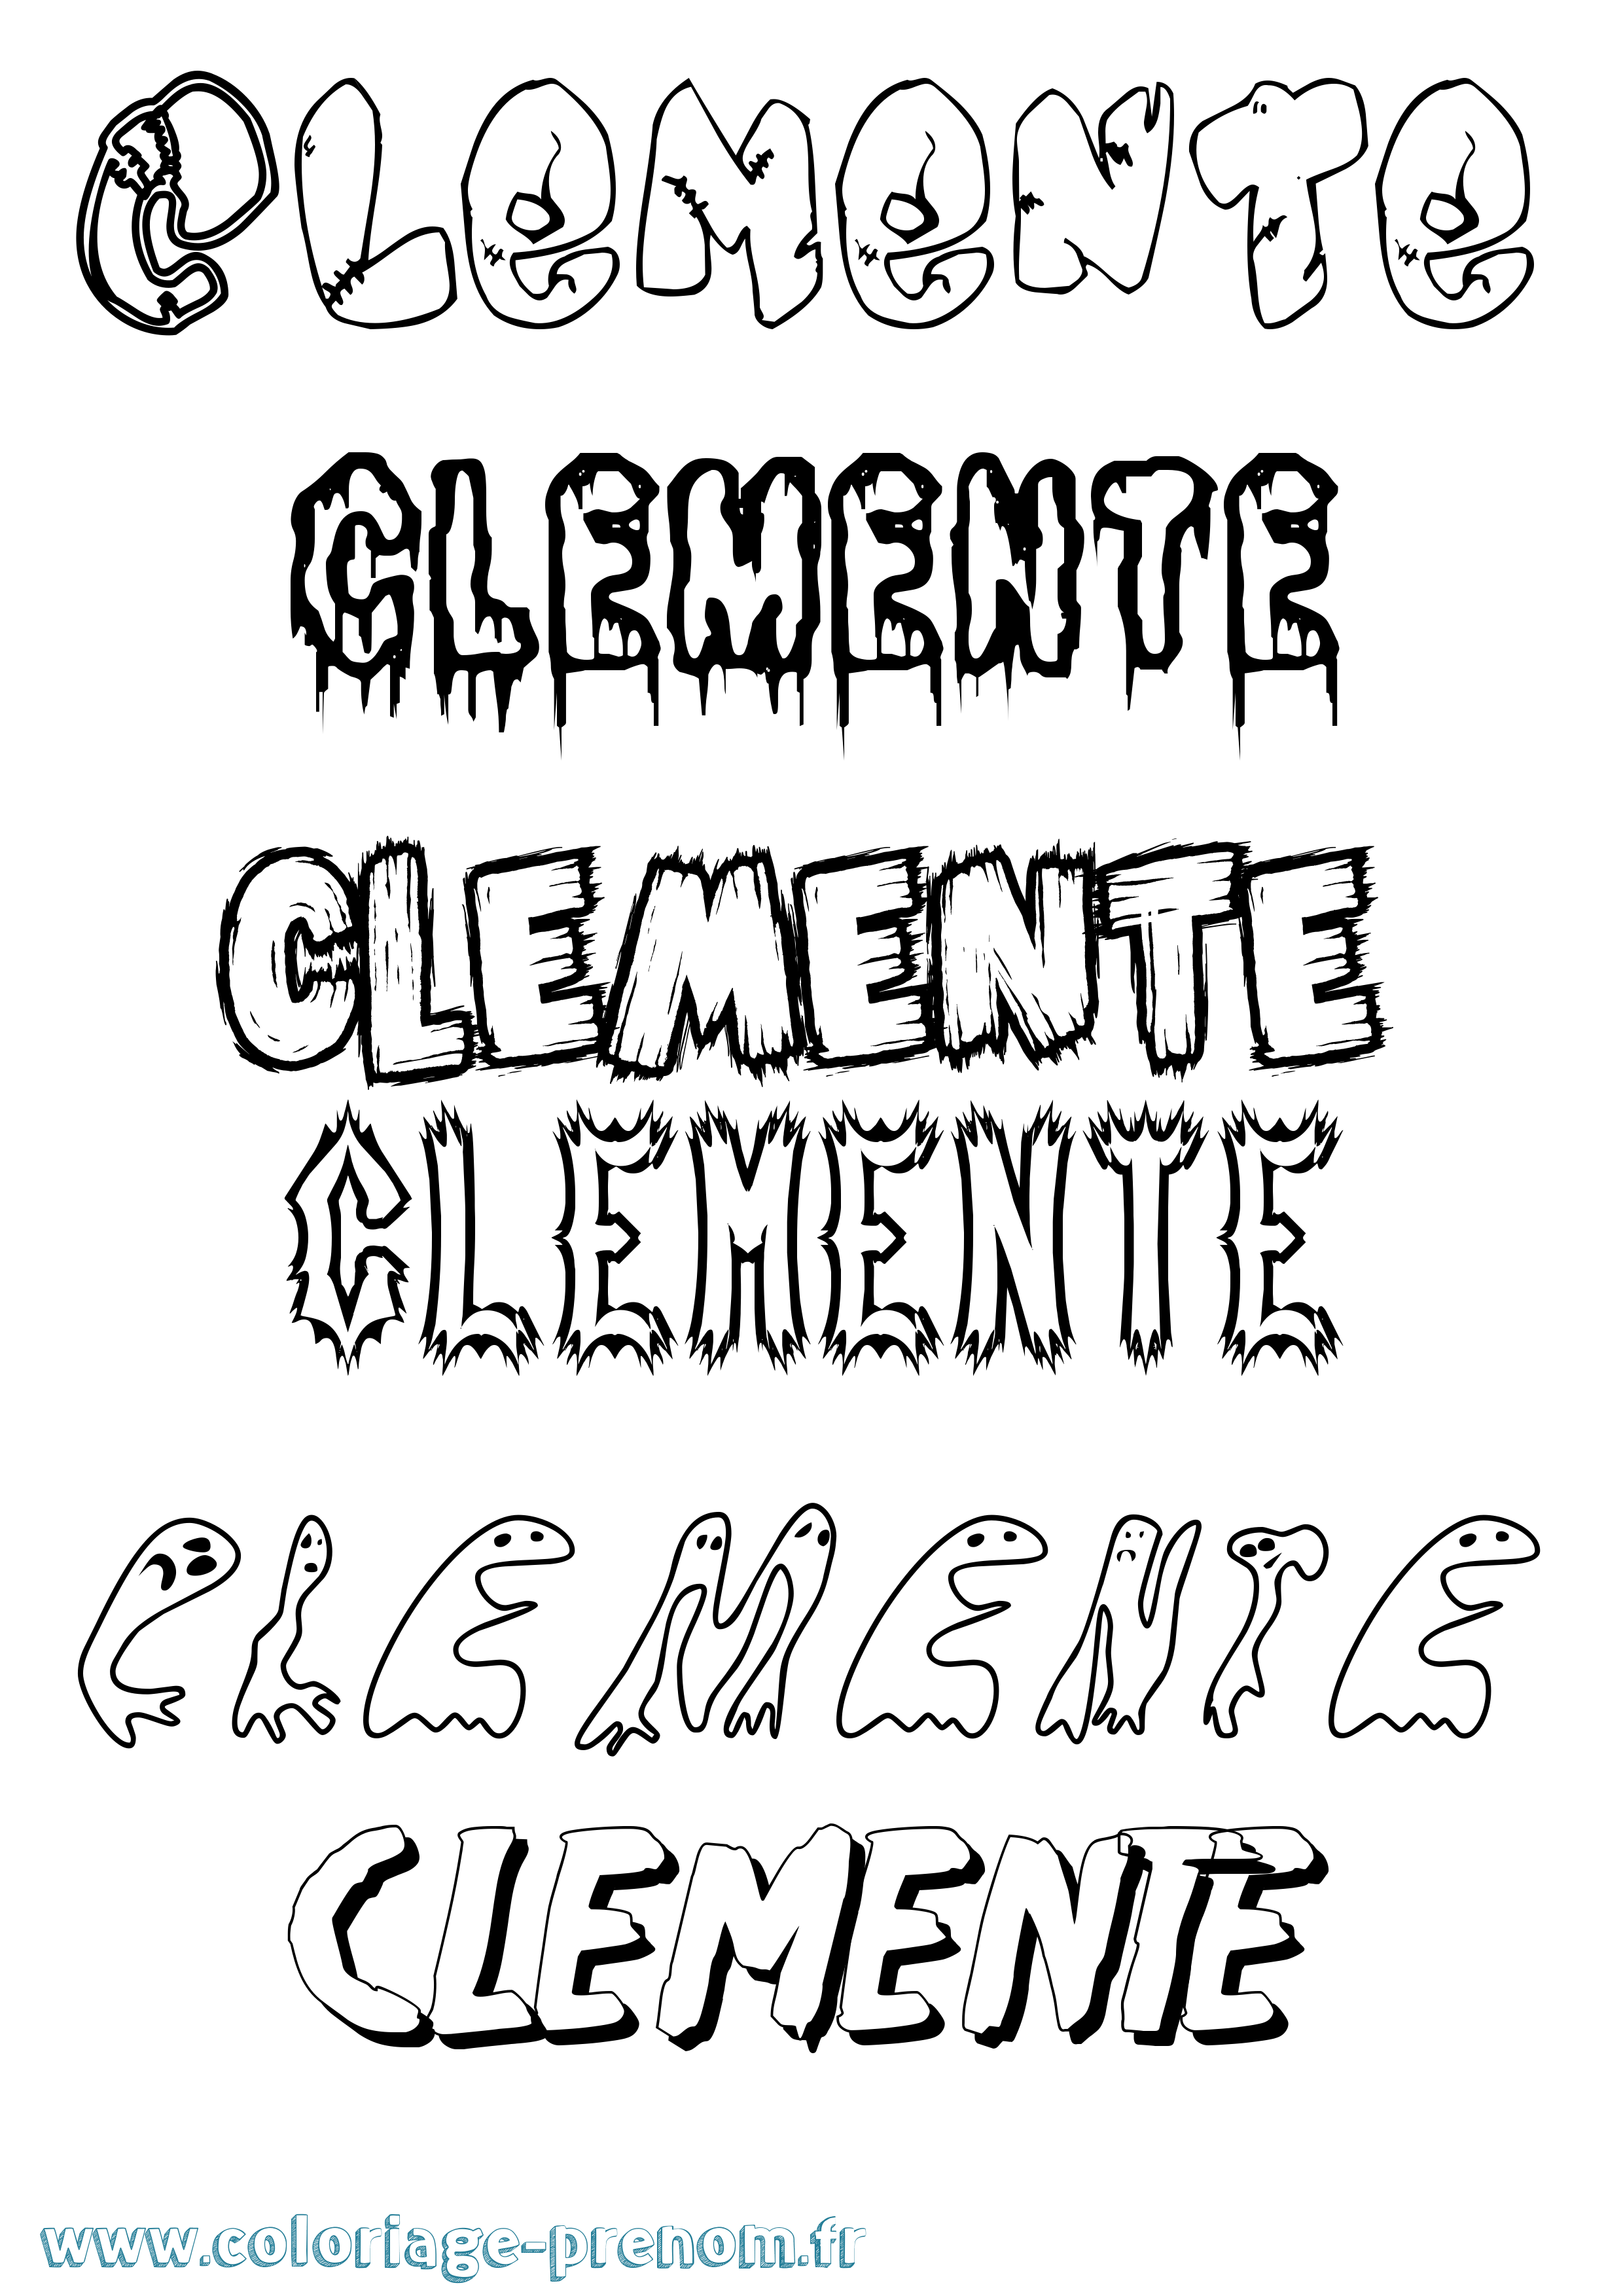 Coloriage prénom Clemente Frisson